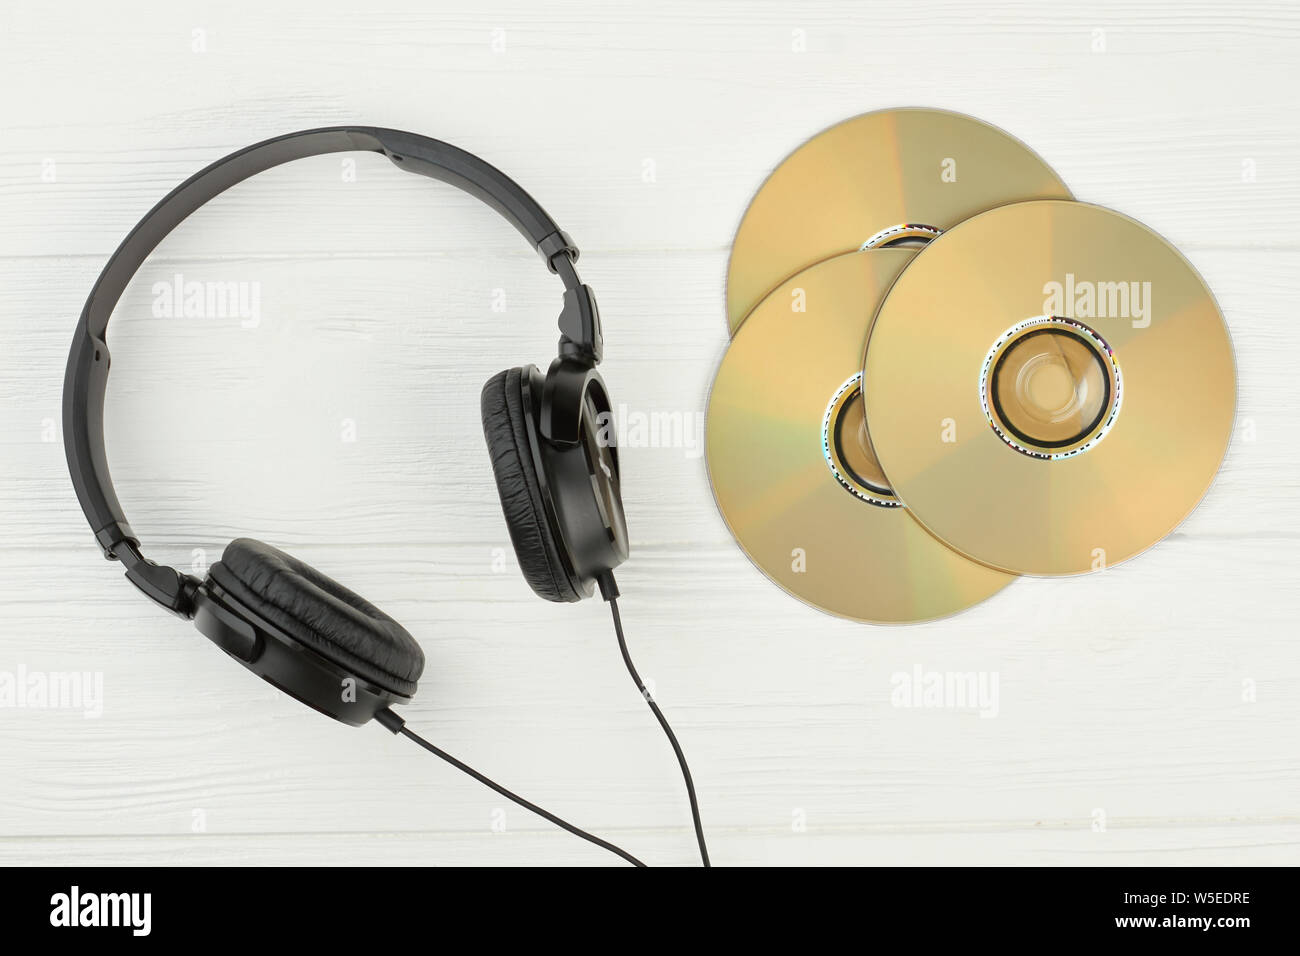 Black headphones and compact discs. Stock Photo